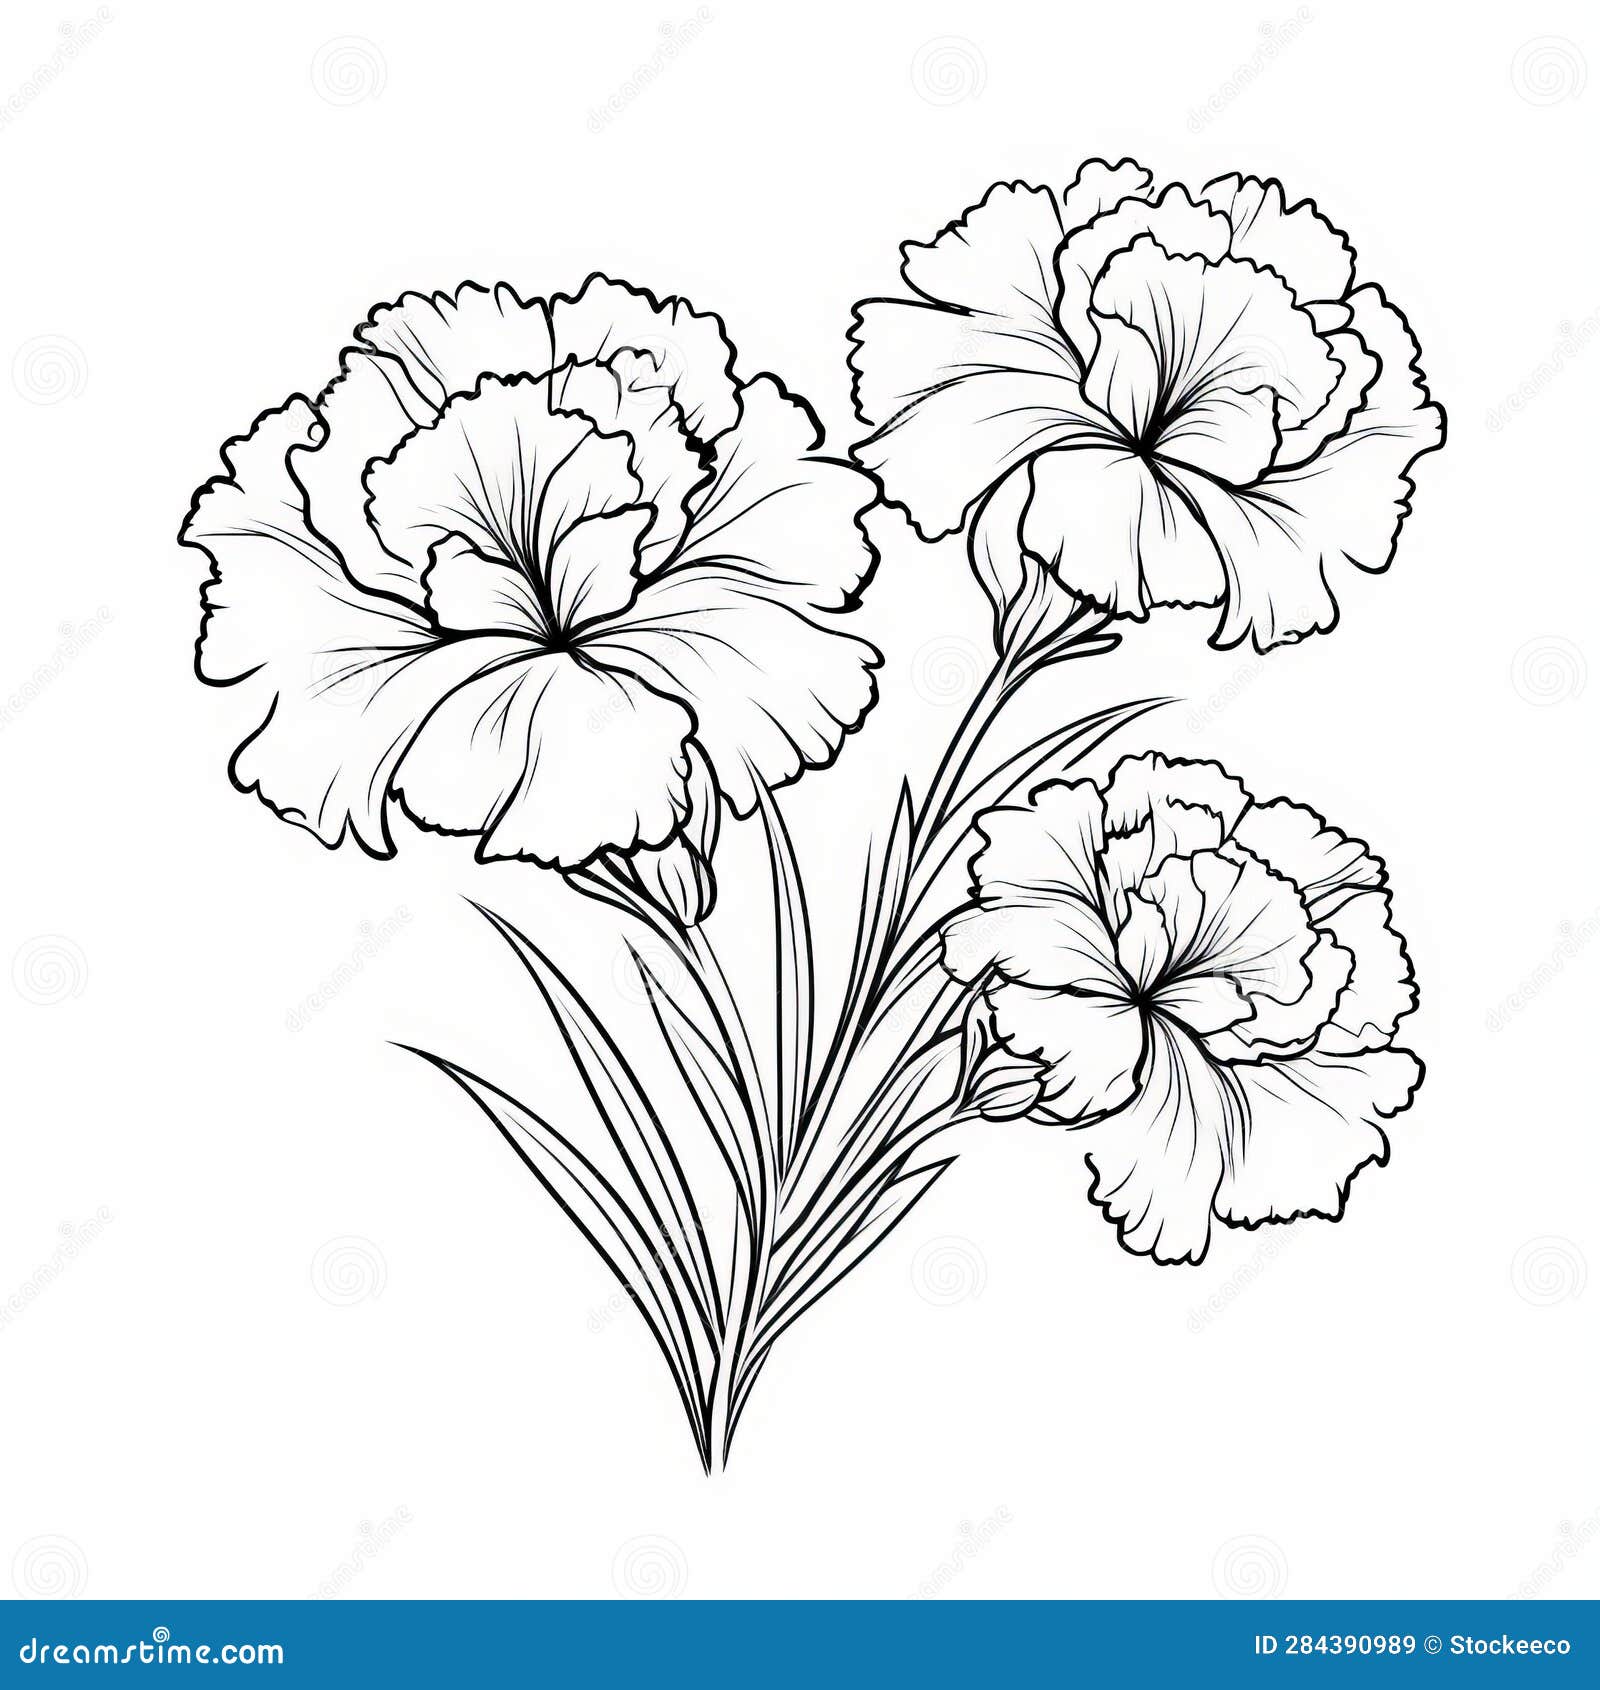 Carnation Coloring Page: Elegant Vector Illustration for Subtle Realism ...